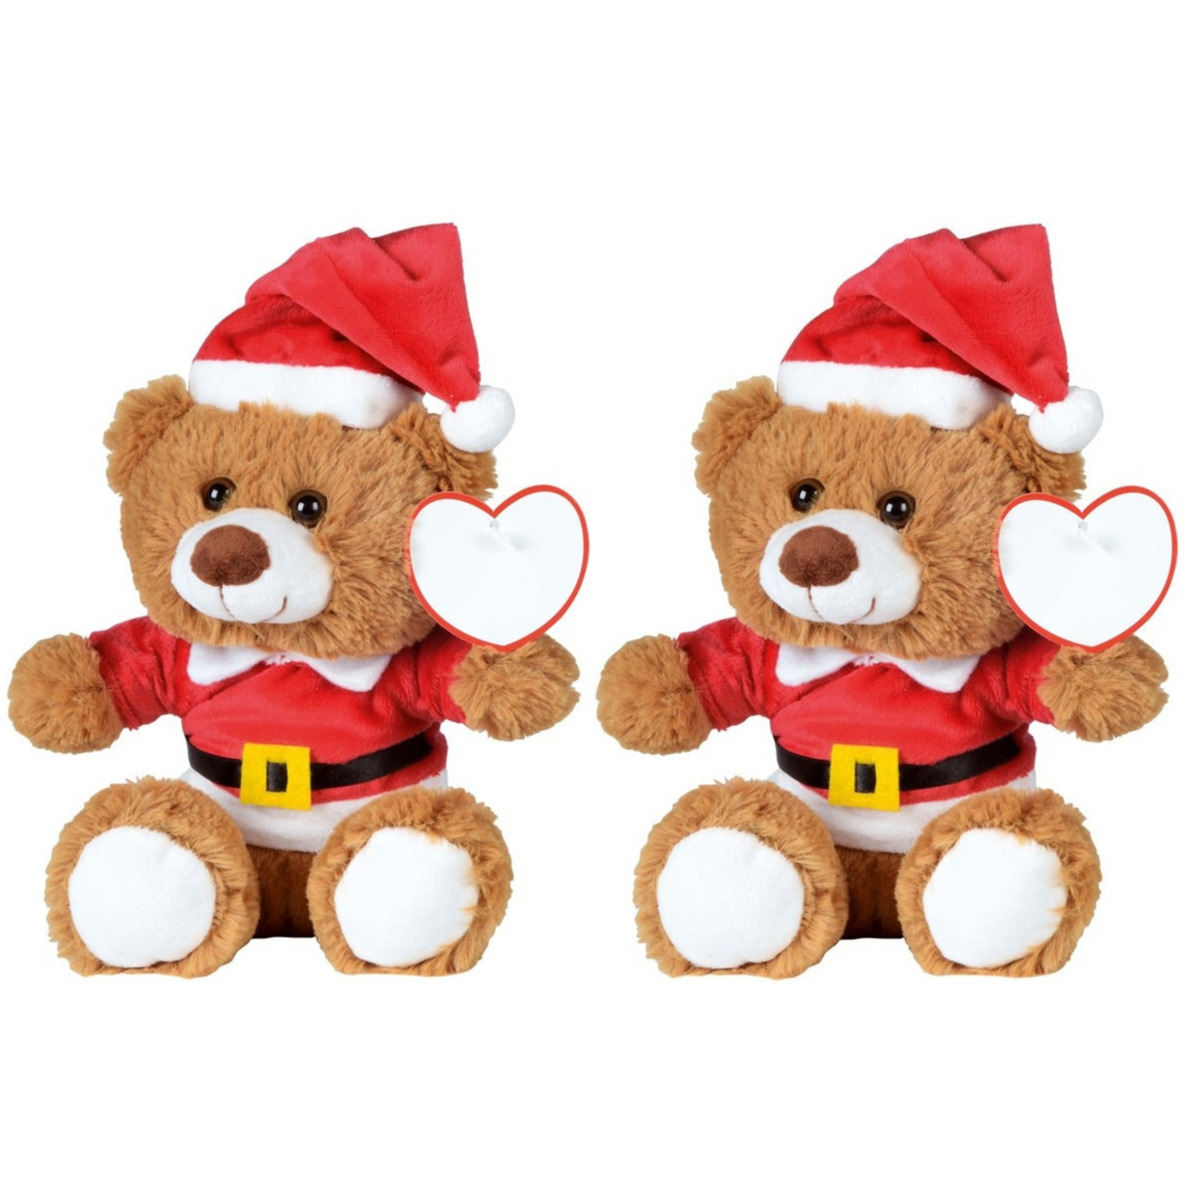 2x Kerst knuffel pluche beertjes bruin zittend 18 x 19 cm speelgoed -